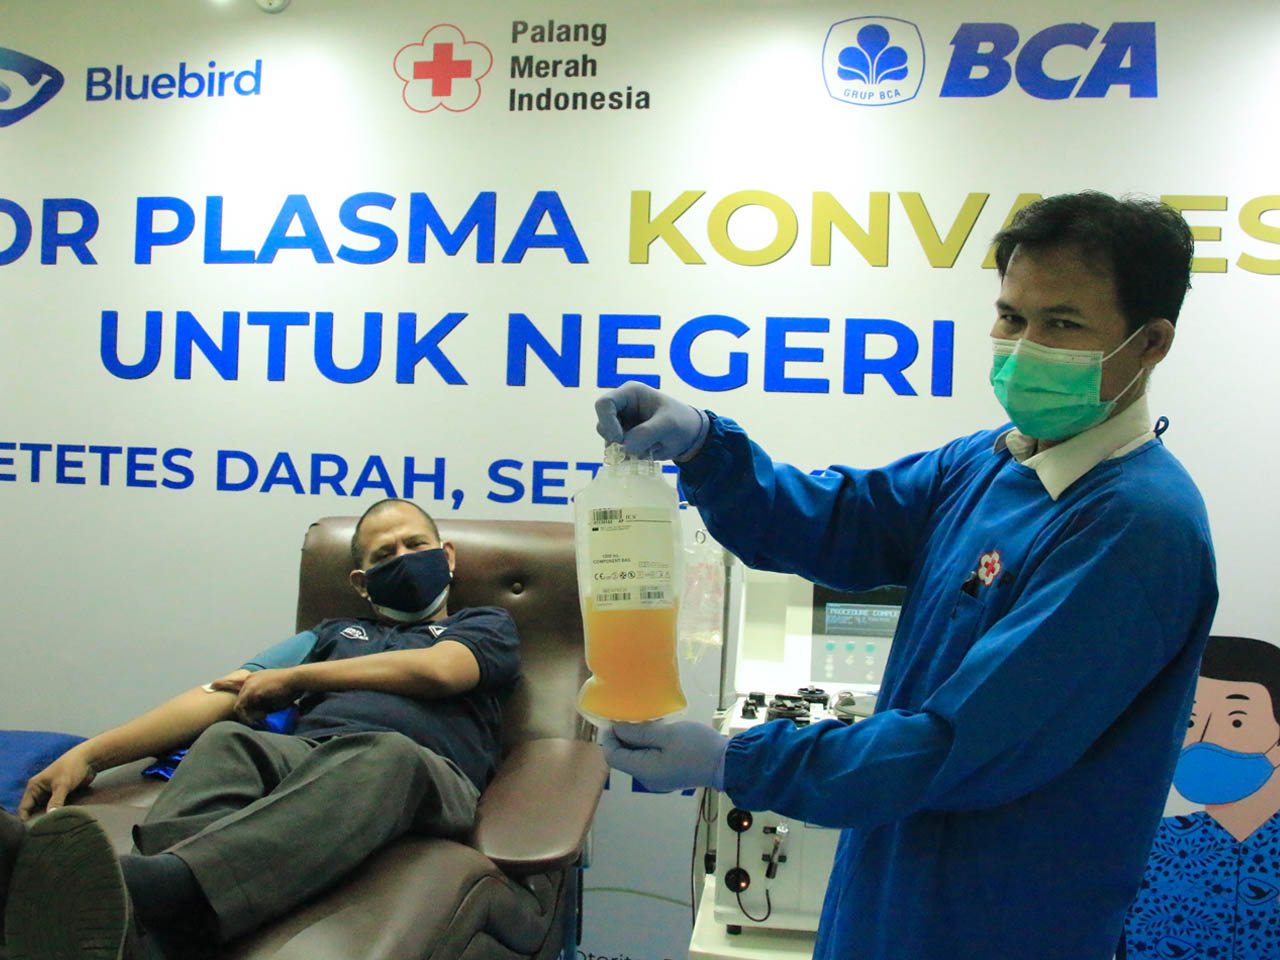 Bluebird Selenggarakan Kegiatan Donor Plasma Konvalesen guna Dukung Tingkat Kesembuhan Penderita COVID-19